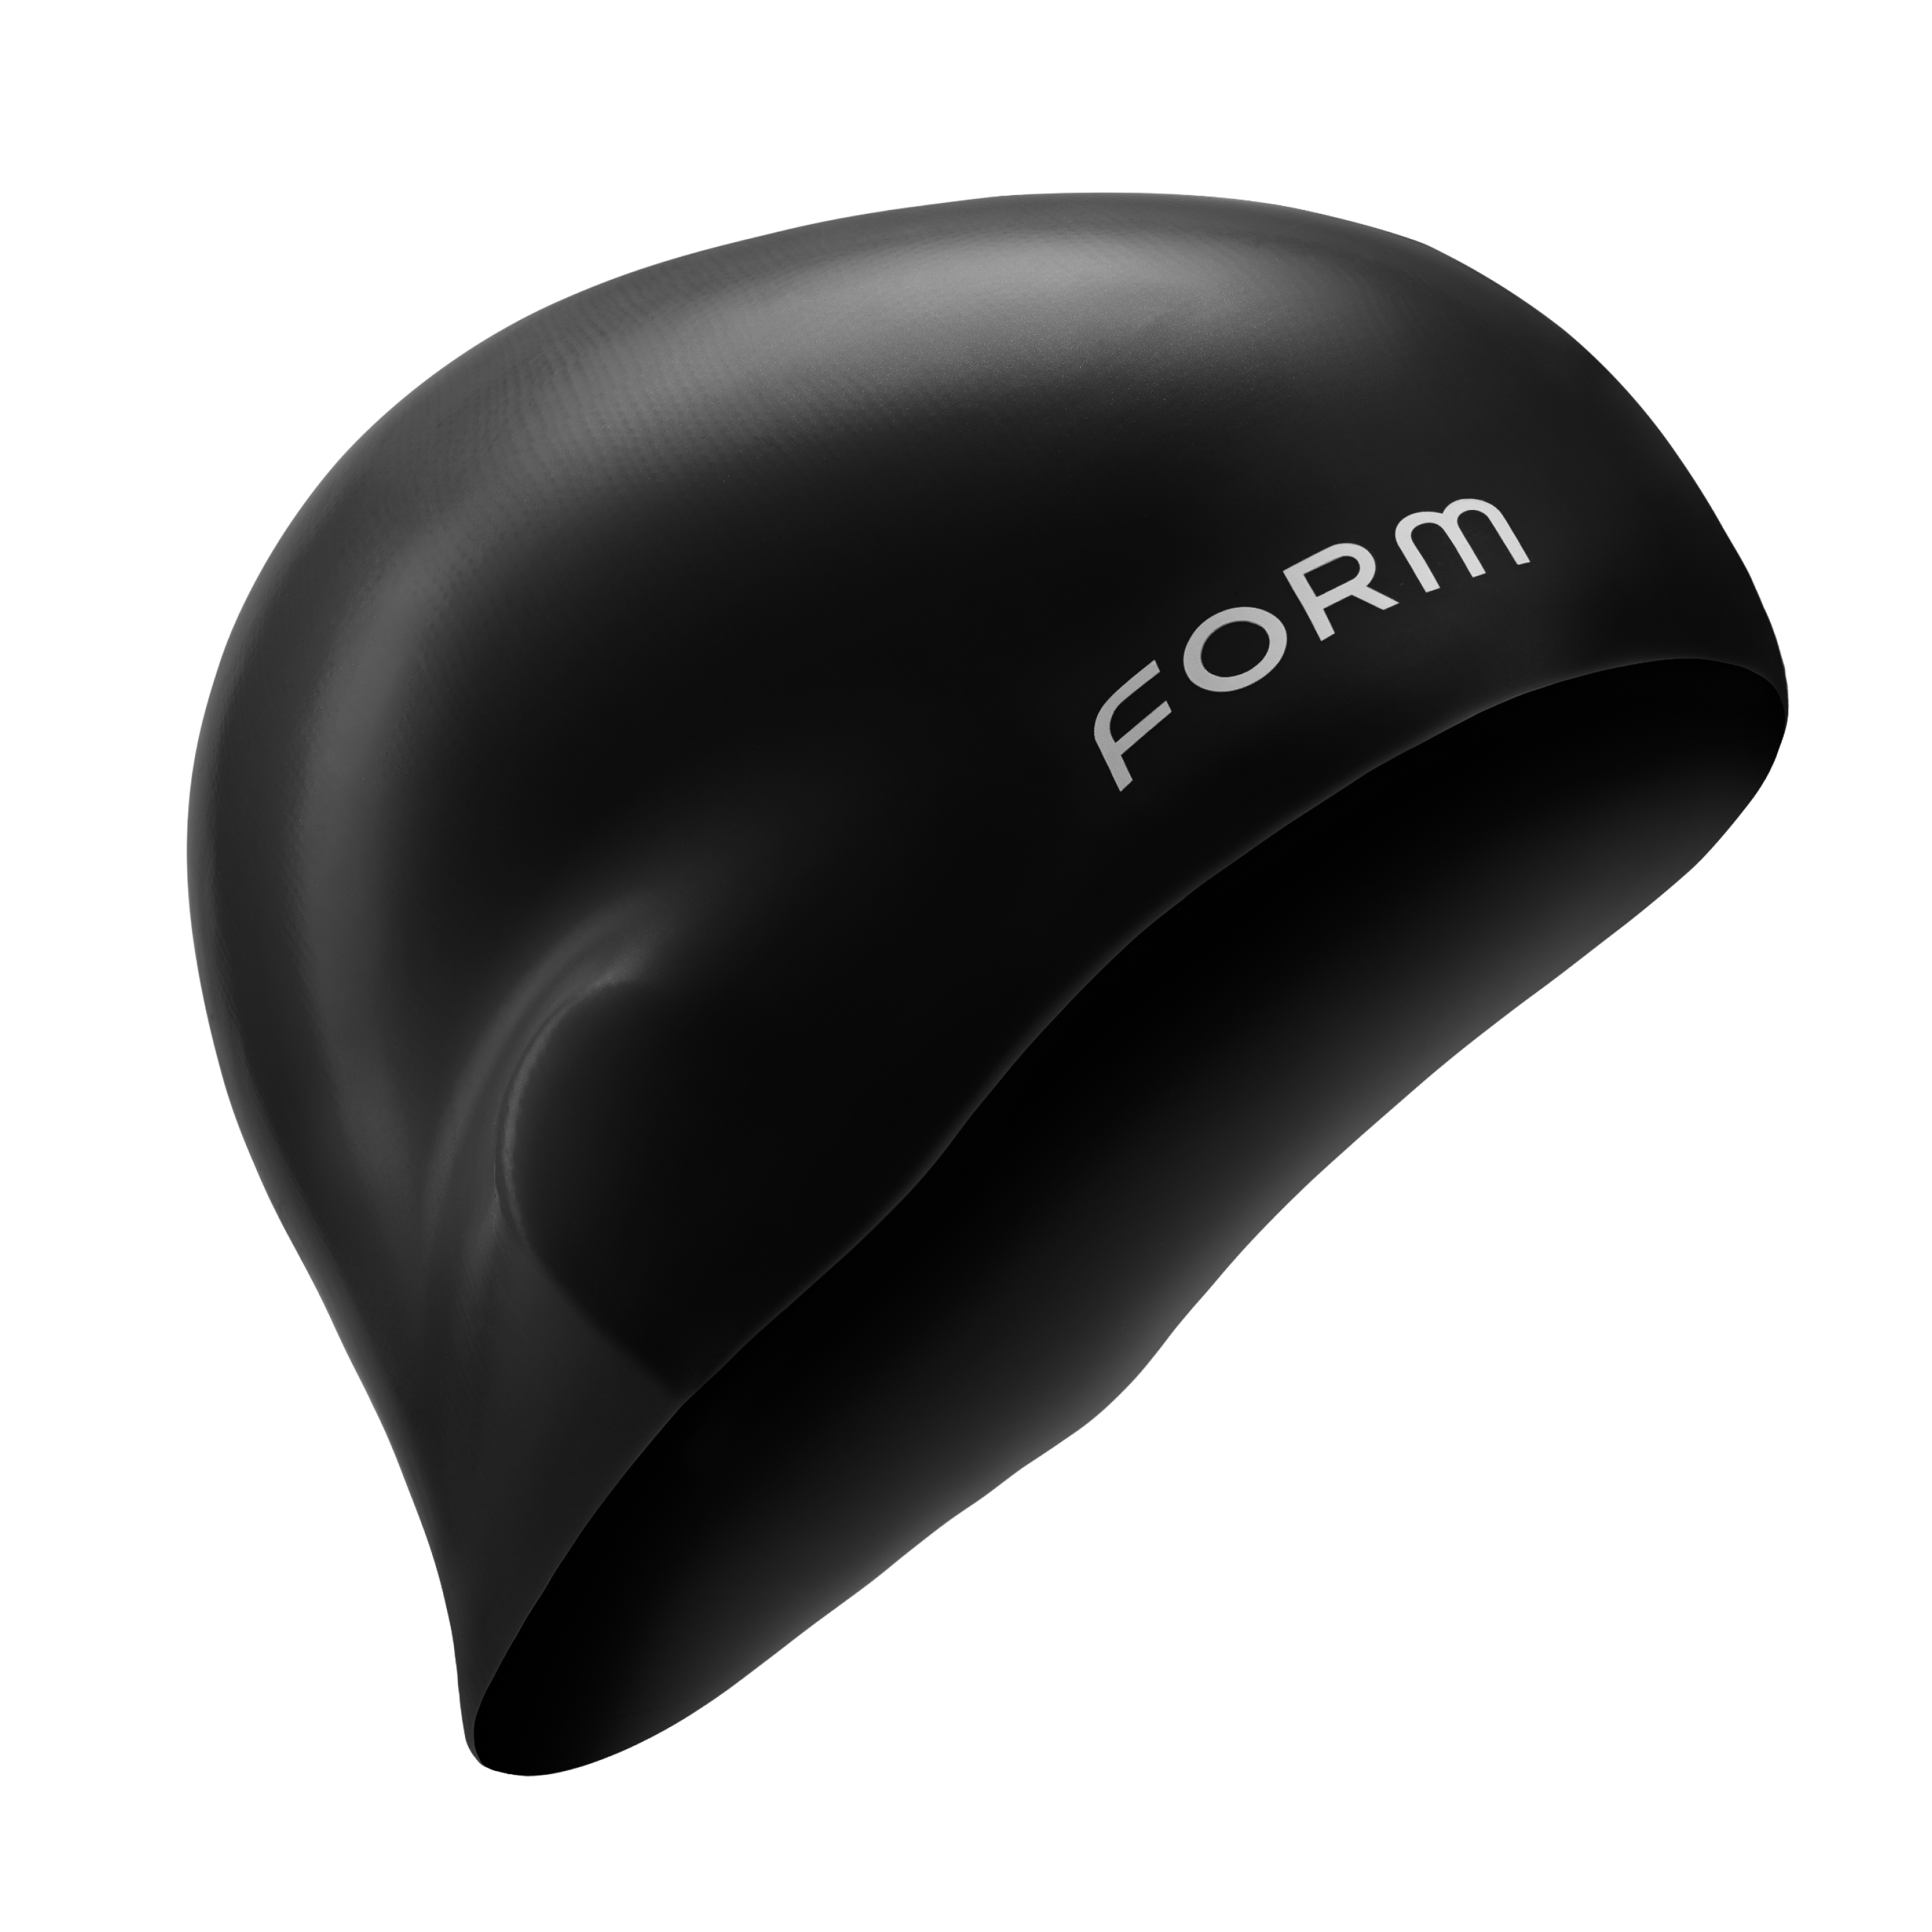 FORM Swim Cap (Unisex)